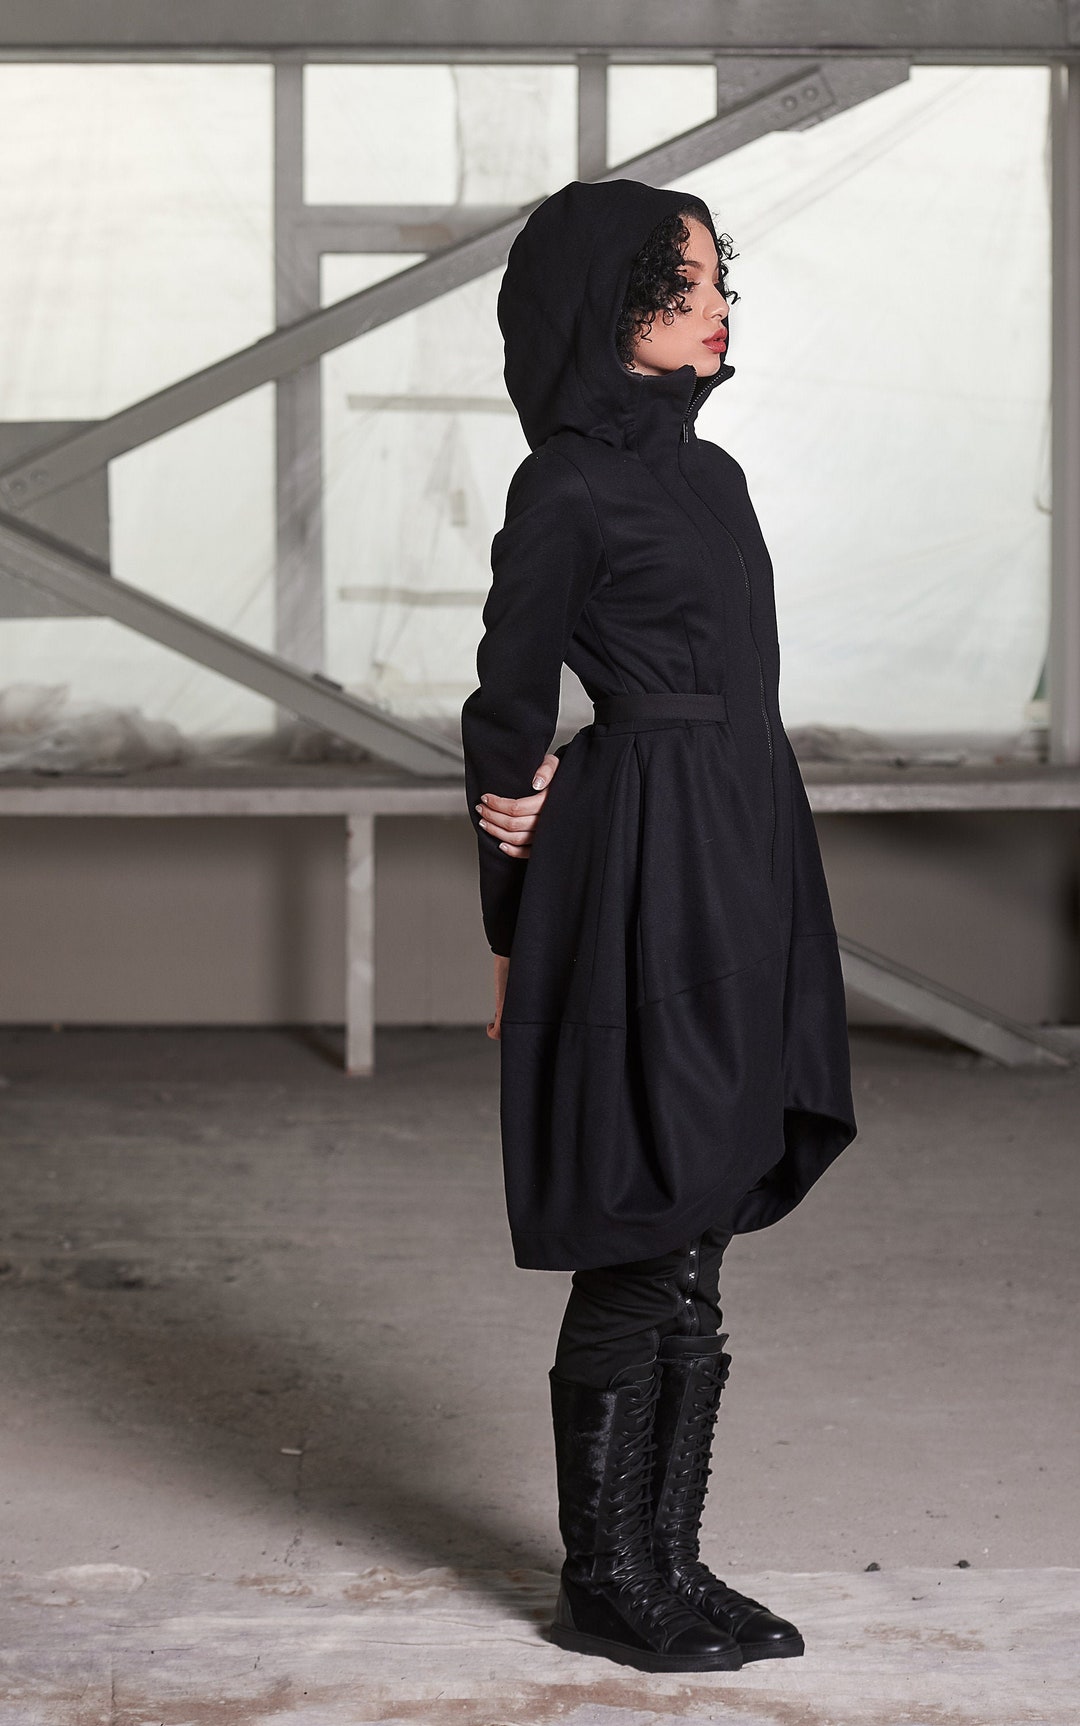 Black Hooded Coatwinter Coat Women Wool Winter Coat Warm - Etsy